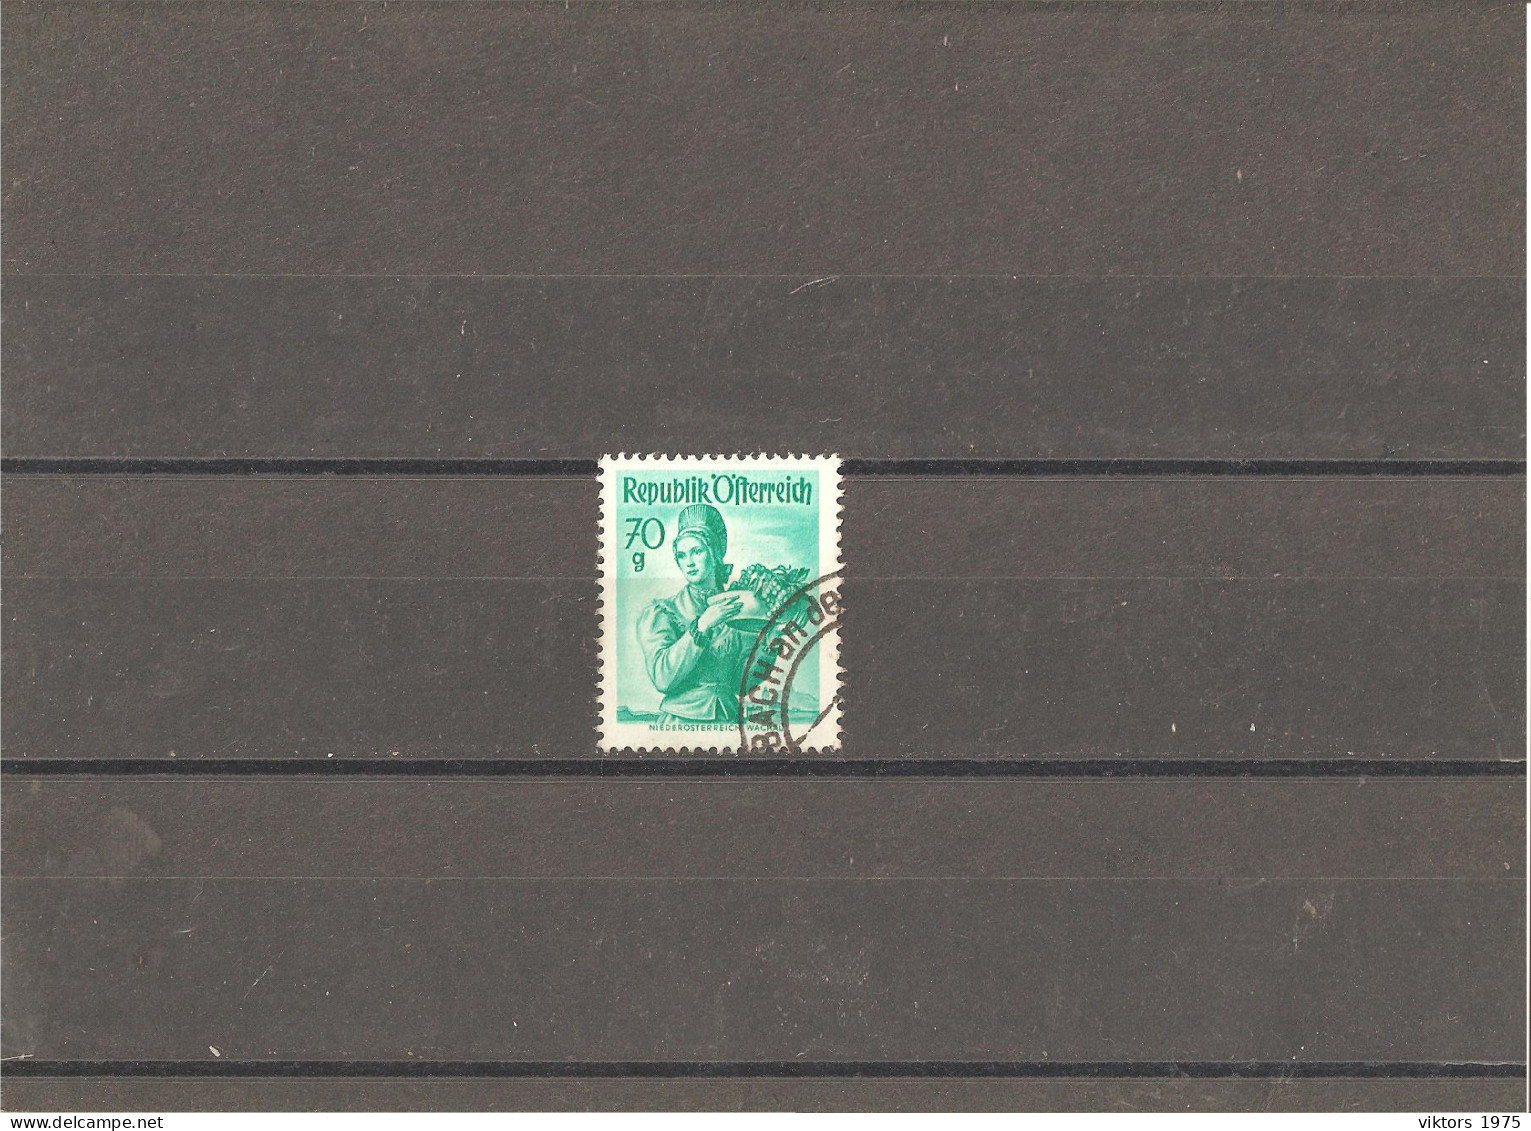 Used Stamp Nr.906 In MICHEL Catalog - Usati